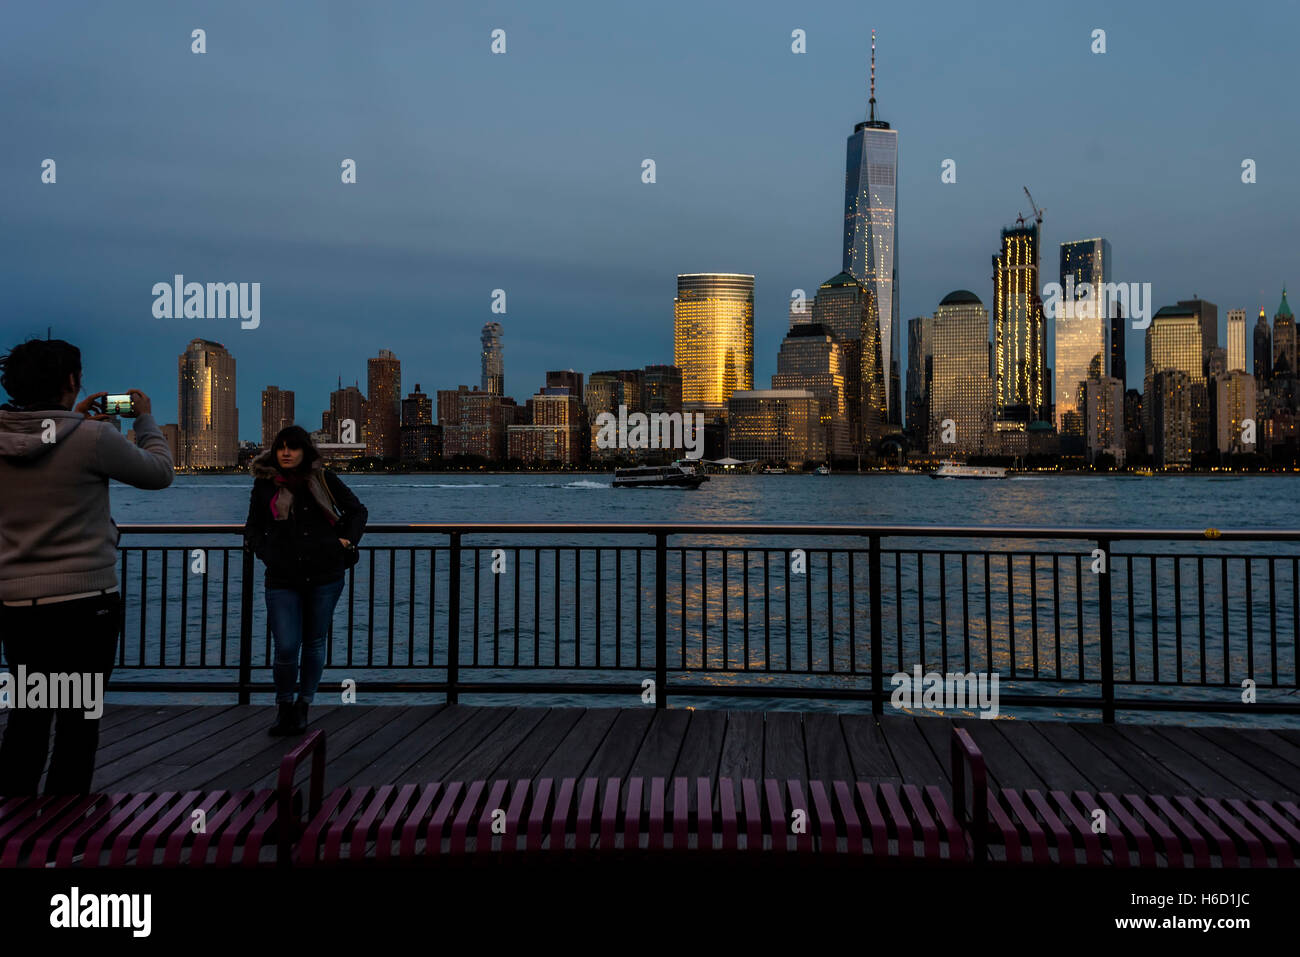 Jersey City, NJ 26 ottobre 2016 = persone di scattare una istantanea sul Jersey City lungomare con una vista della parte inferiore della Skyline di Manhattan con il World Trade Center e il Centro Finanziario Mondiale in background. Foto Stock